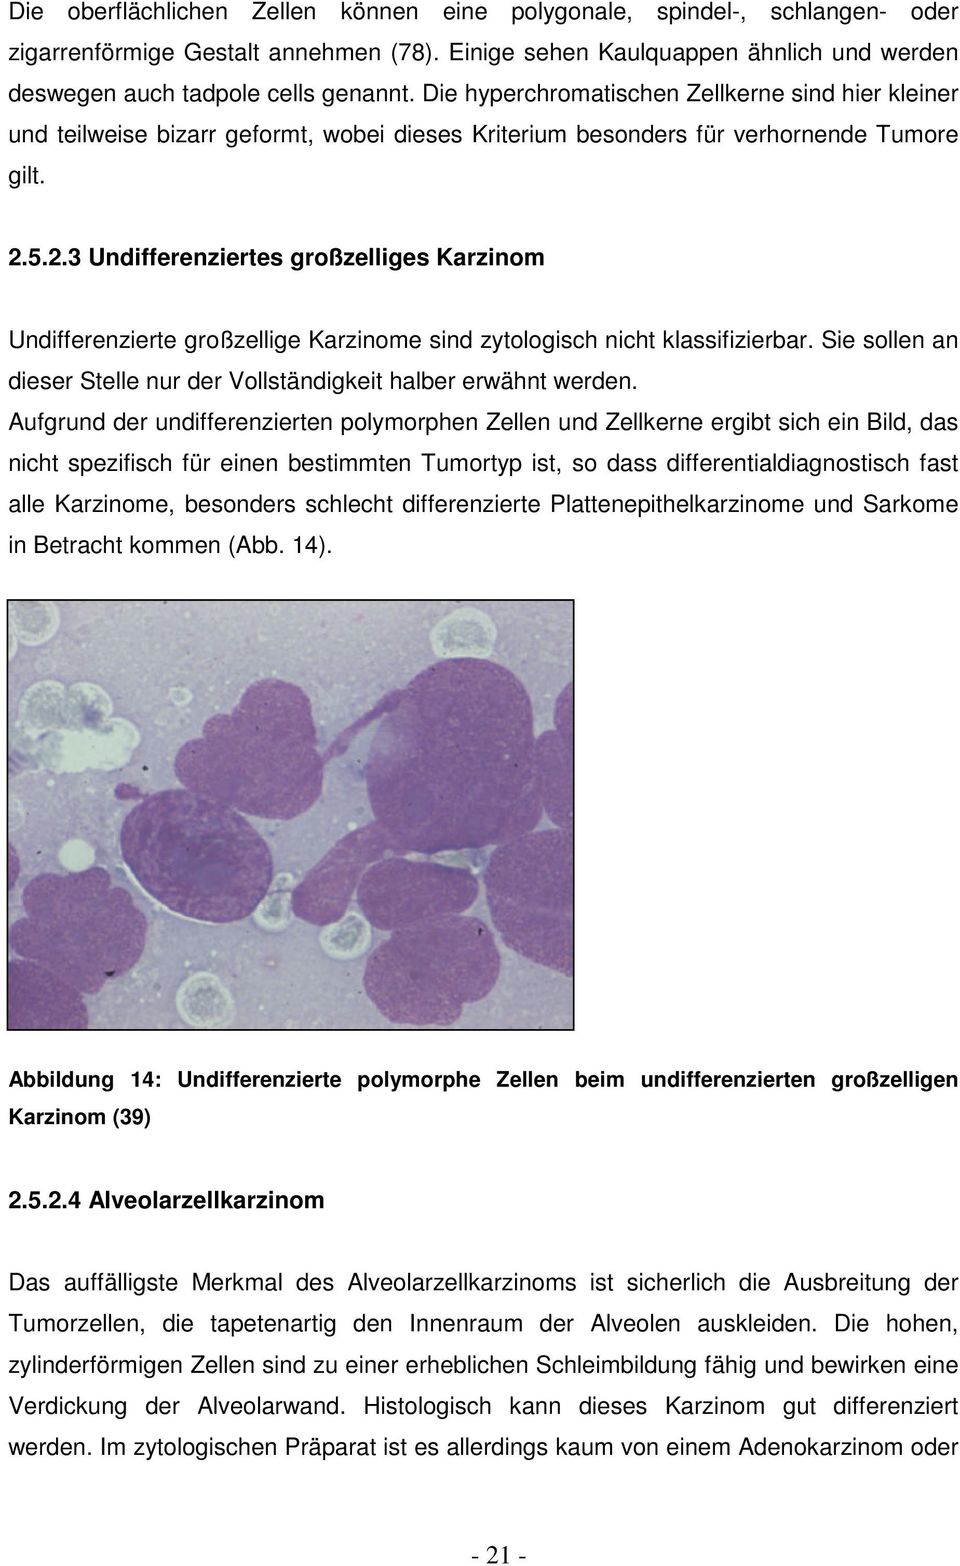 5.2.3 Undifferenziertes großzelliges Karzinom Undifferenzierte großzellige Karzinome sind zytologisch nicht klassifizierbar. Sie sollen an dieser Stelle nur der Vollständigkeit halber erwähnt werden.